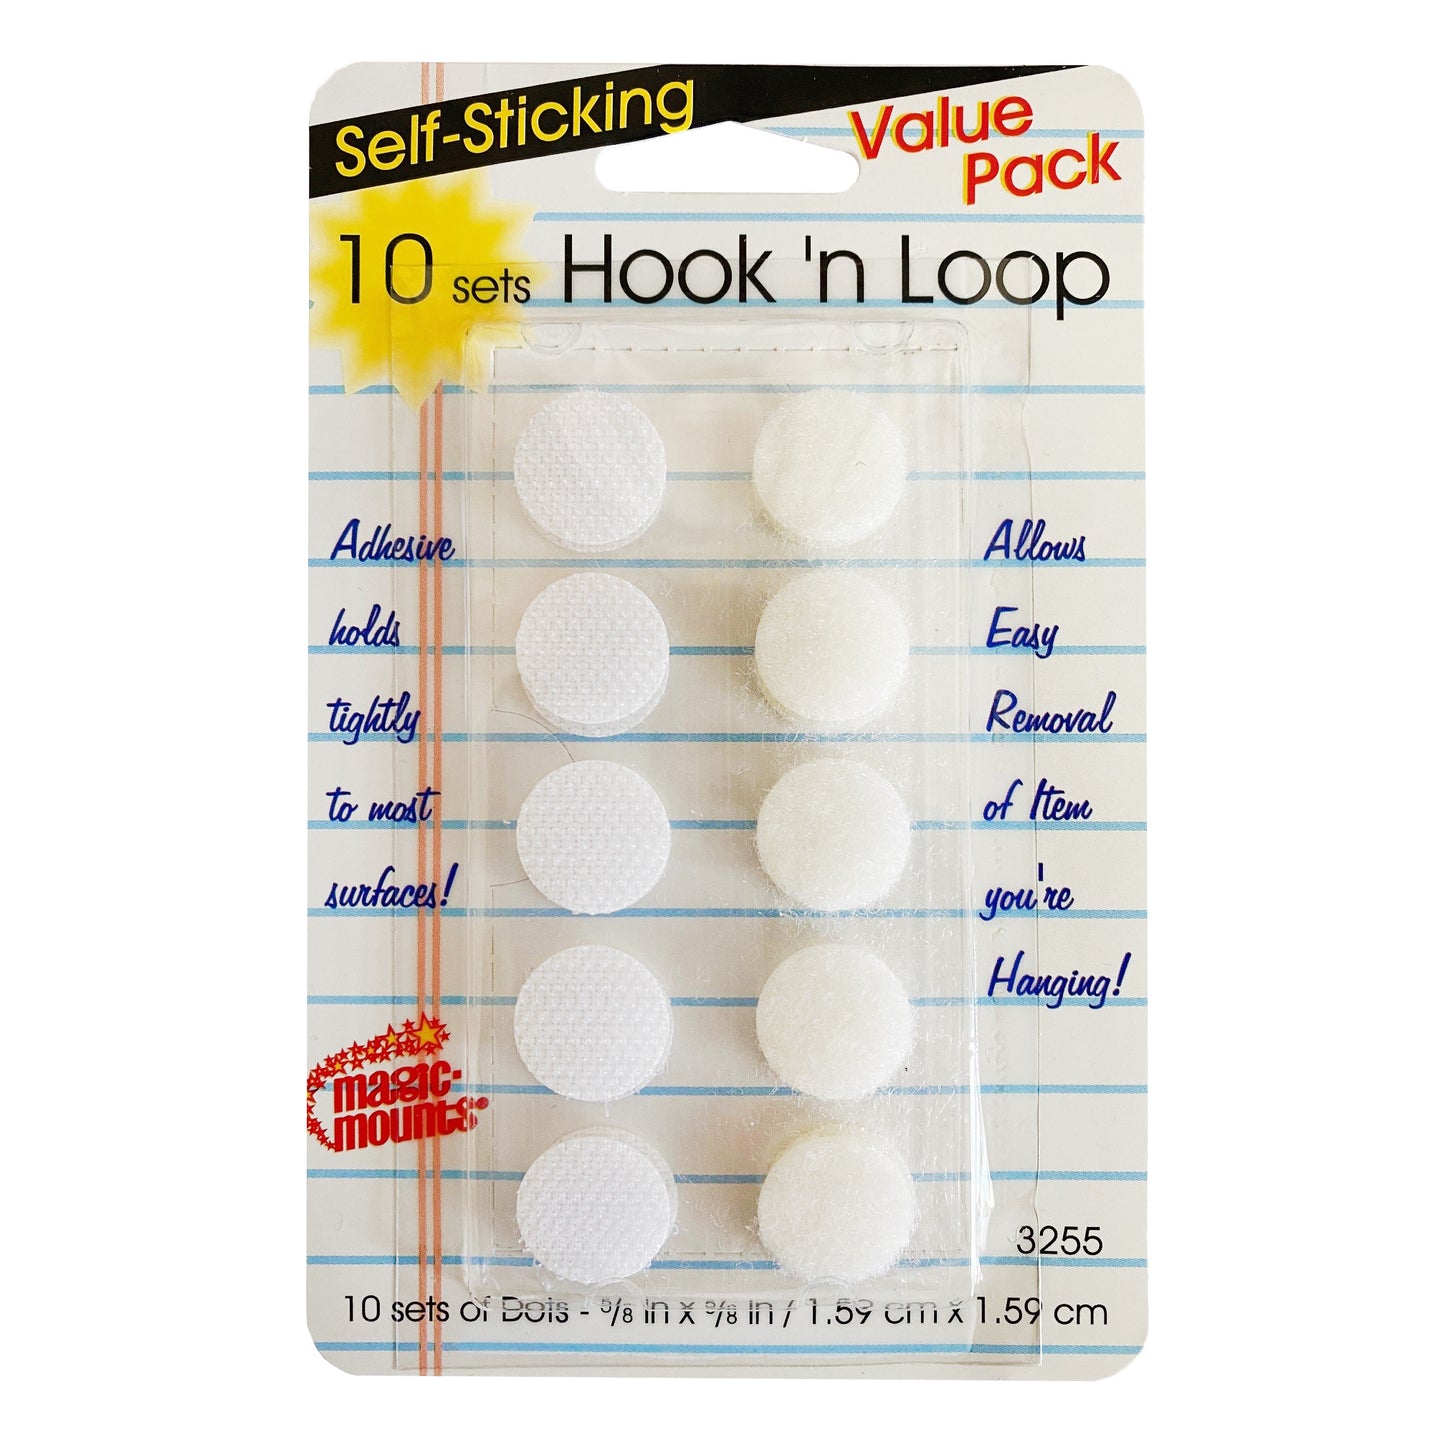 Self-Sticking Hook 'N Loop Dots 5/8", White, 10 Sets Per Pack, 12 Packs